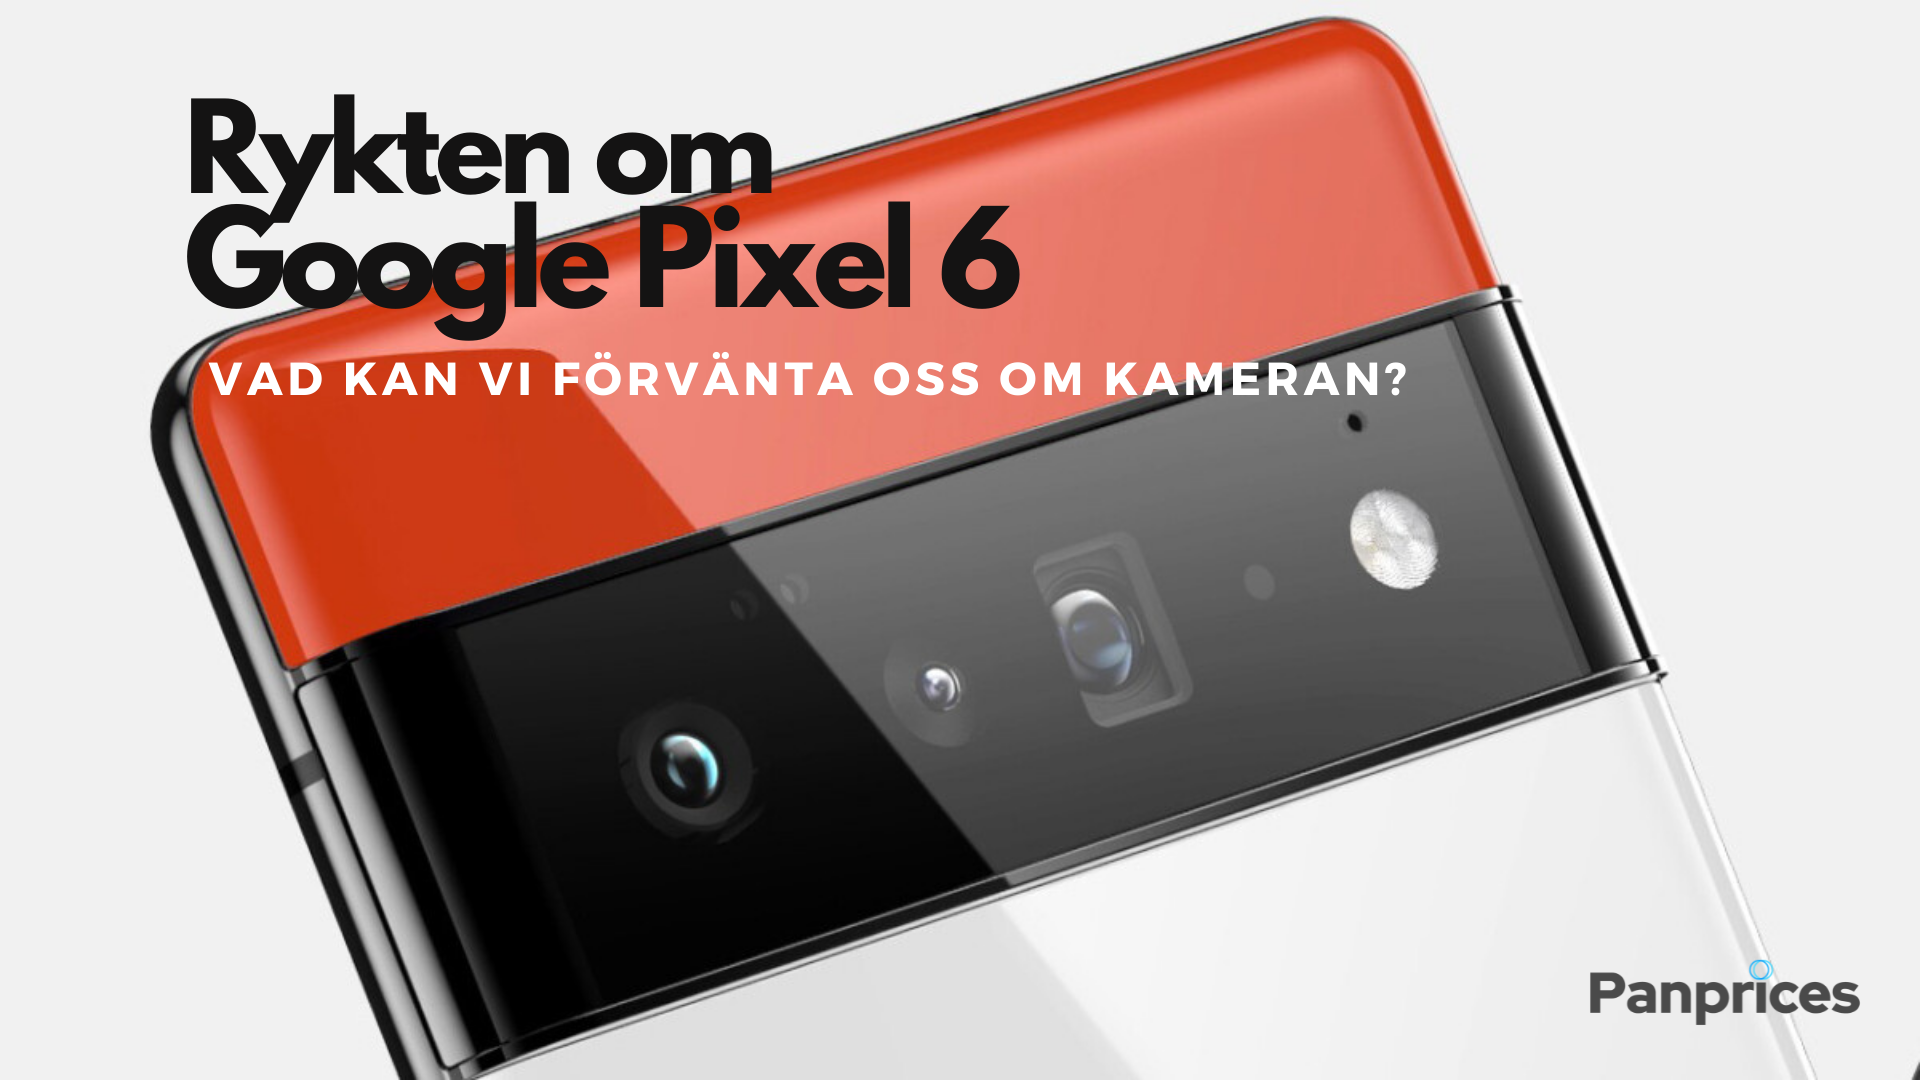 Rykten om Google Pixel 6: Vad kan vi förvänta oss om kameran?